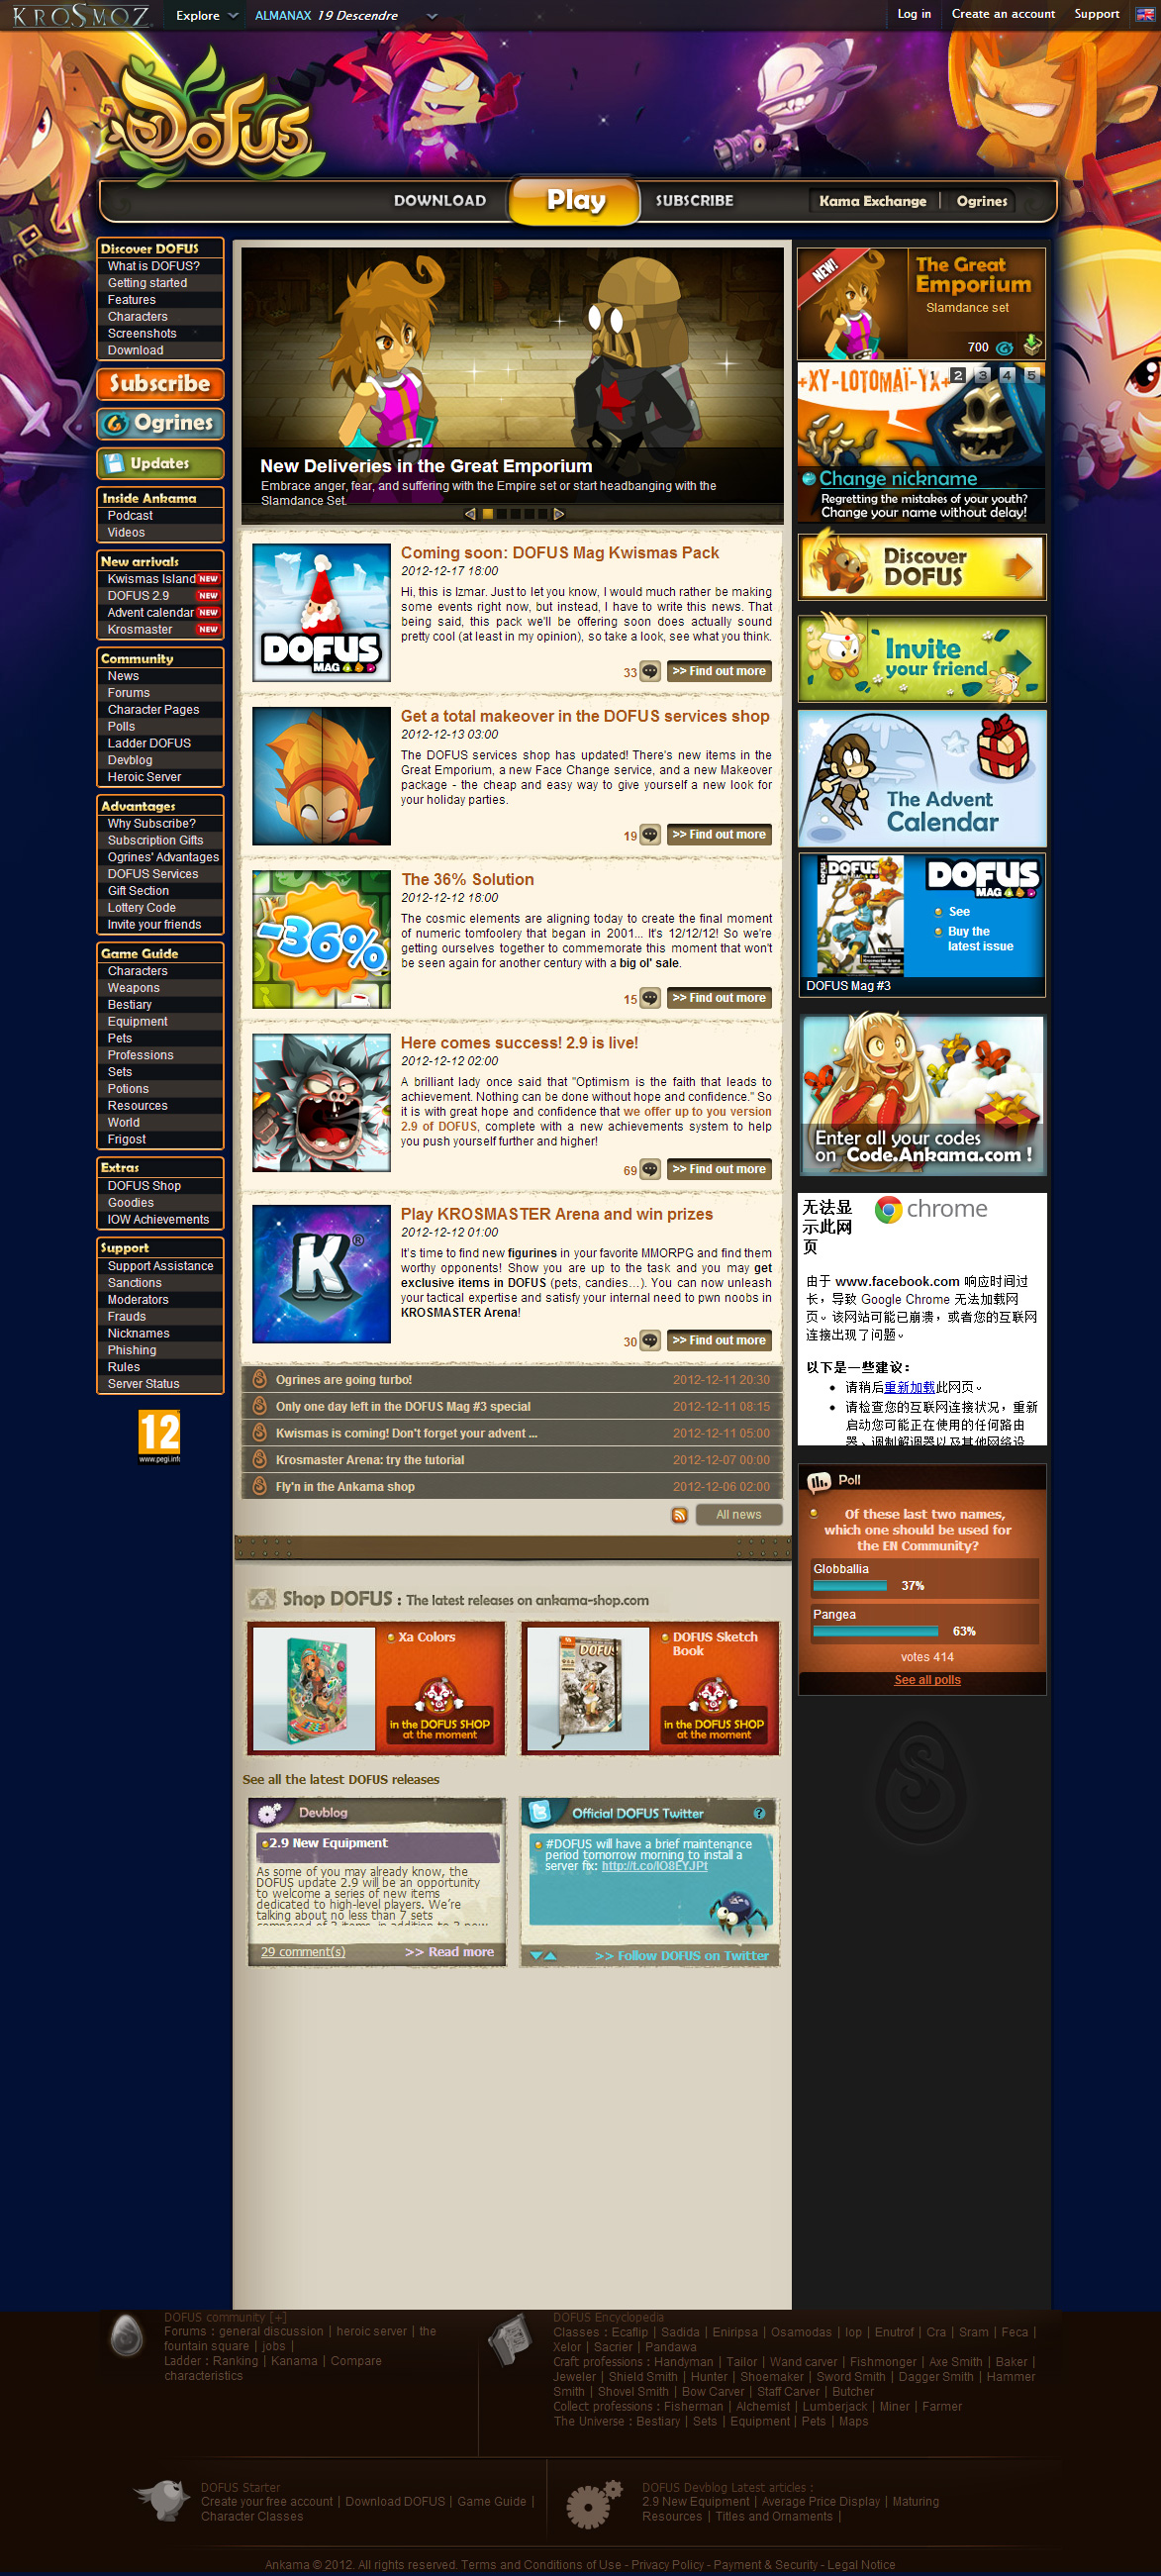 MMORPG DOFUS，大型多人在线角色扮演游戏网站。